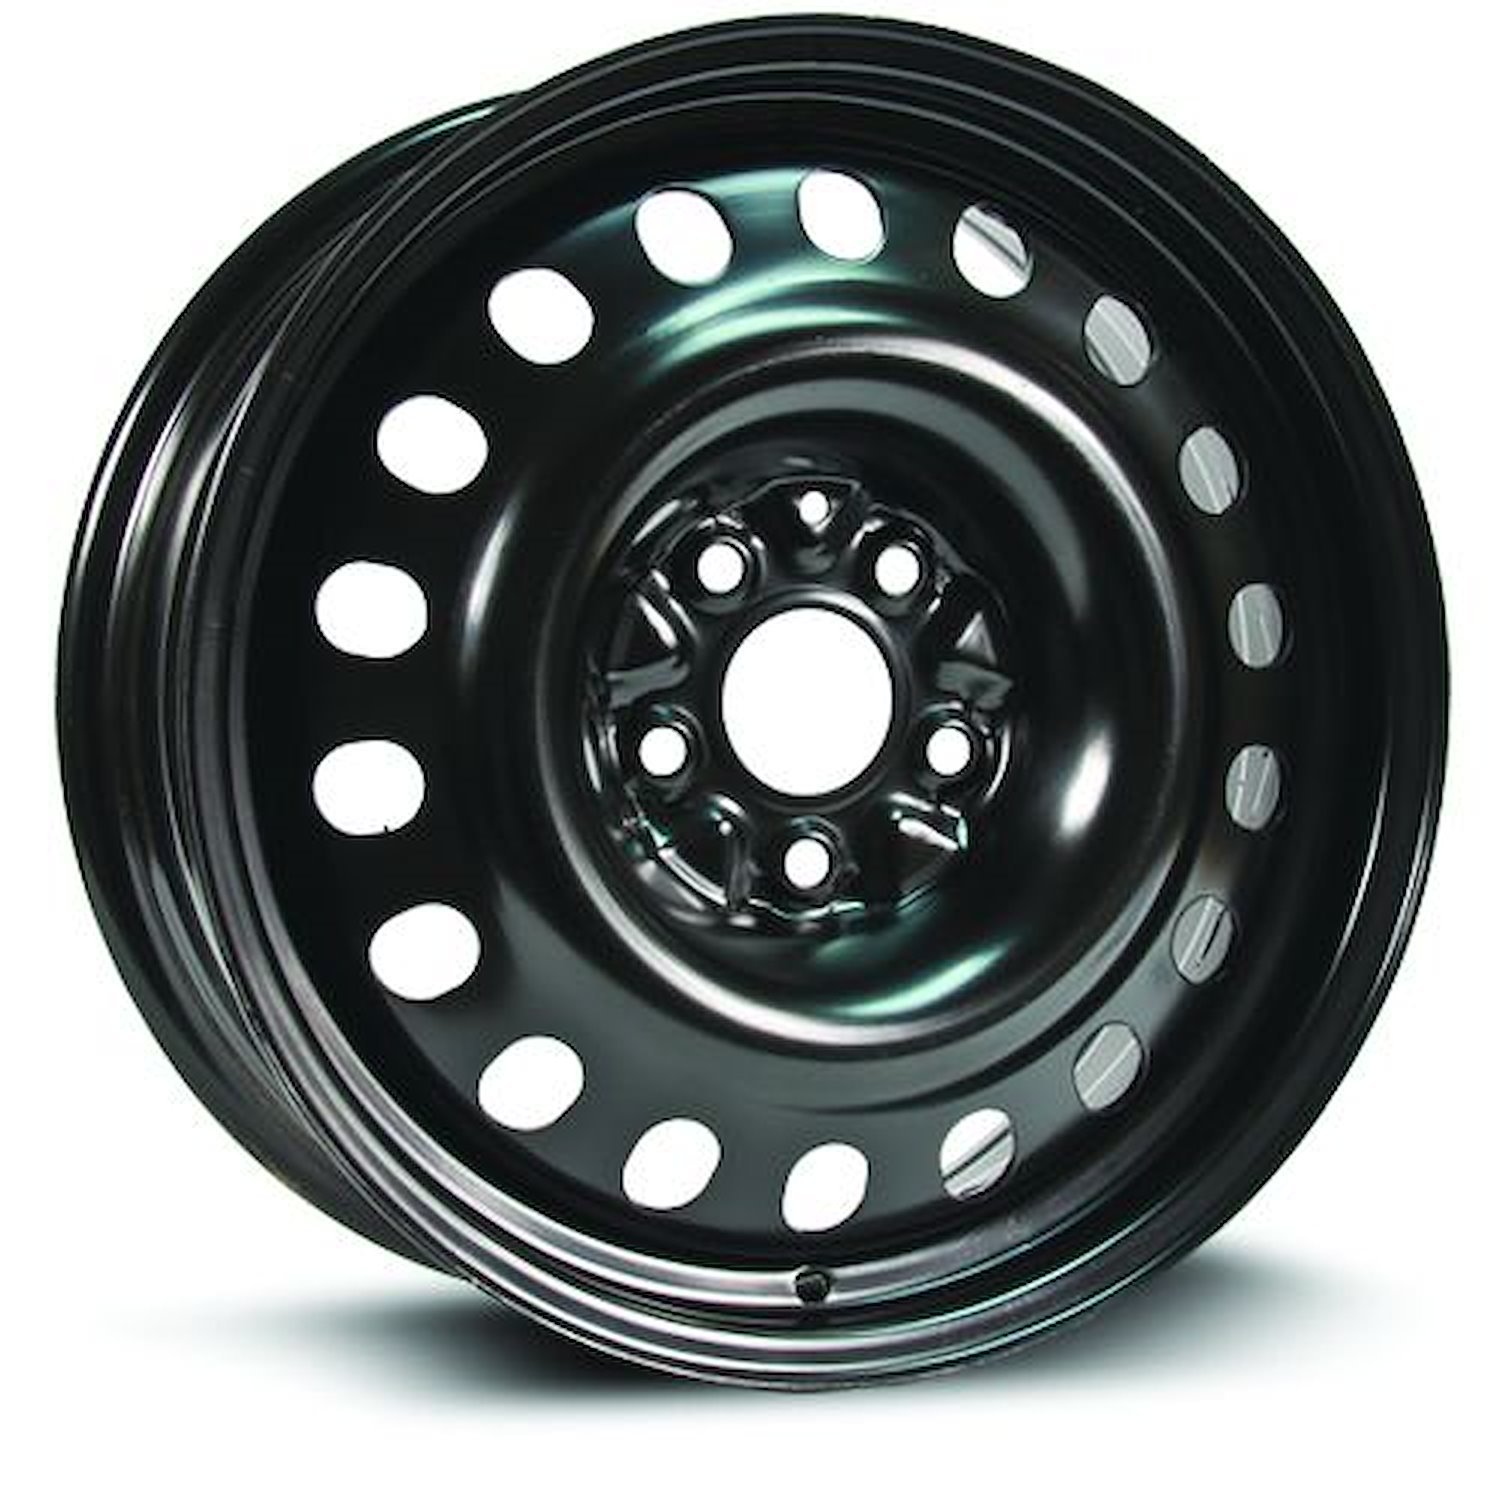 X47567B Steel Wheel [Size: 17" x 7"] Black Finish